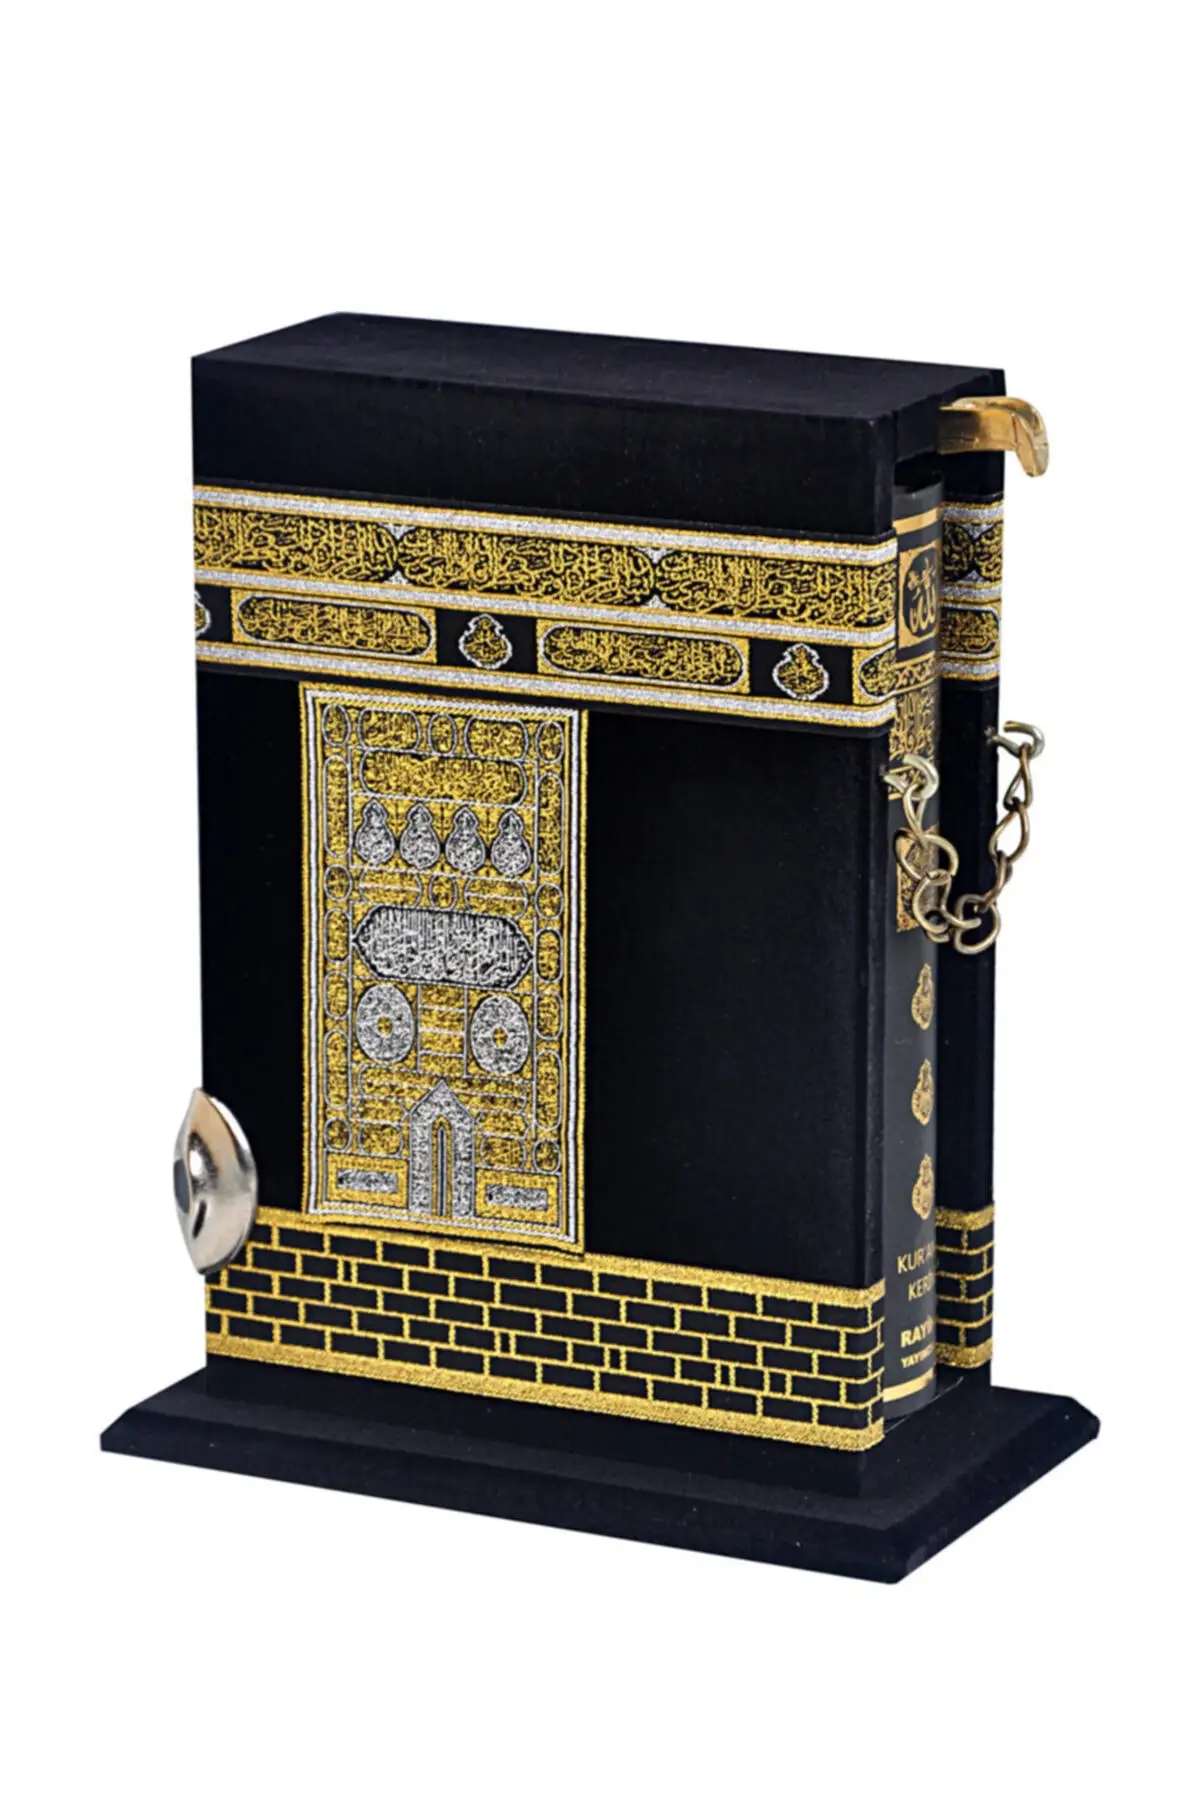 kaaba-livro-espiritual-islamico-medio-para-muculmanos-padrao-do-alcorao-encaixotado-o-alcorao-sagrado-carta-Arabe-completa-livro-religioso-ramadan